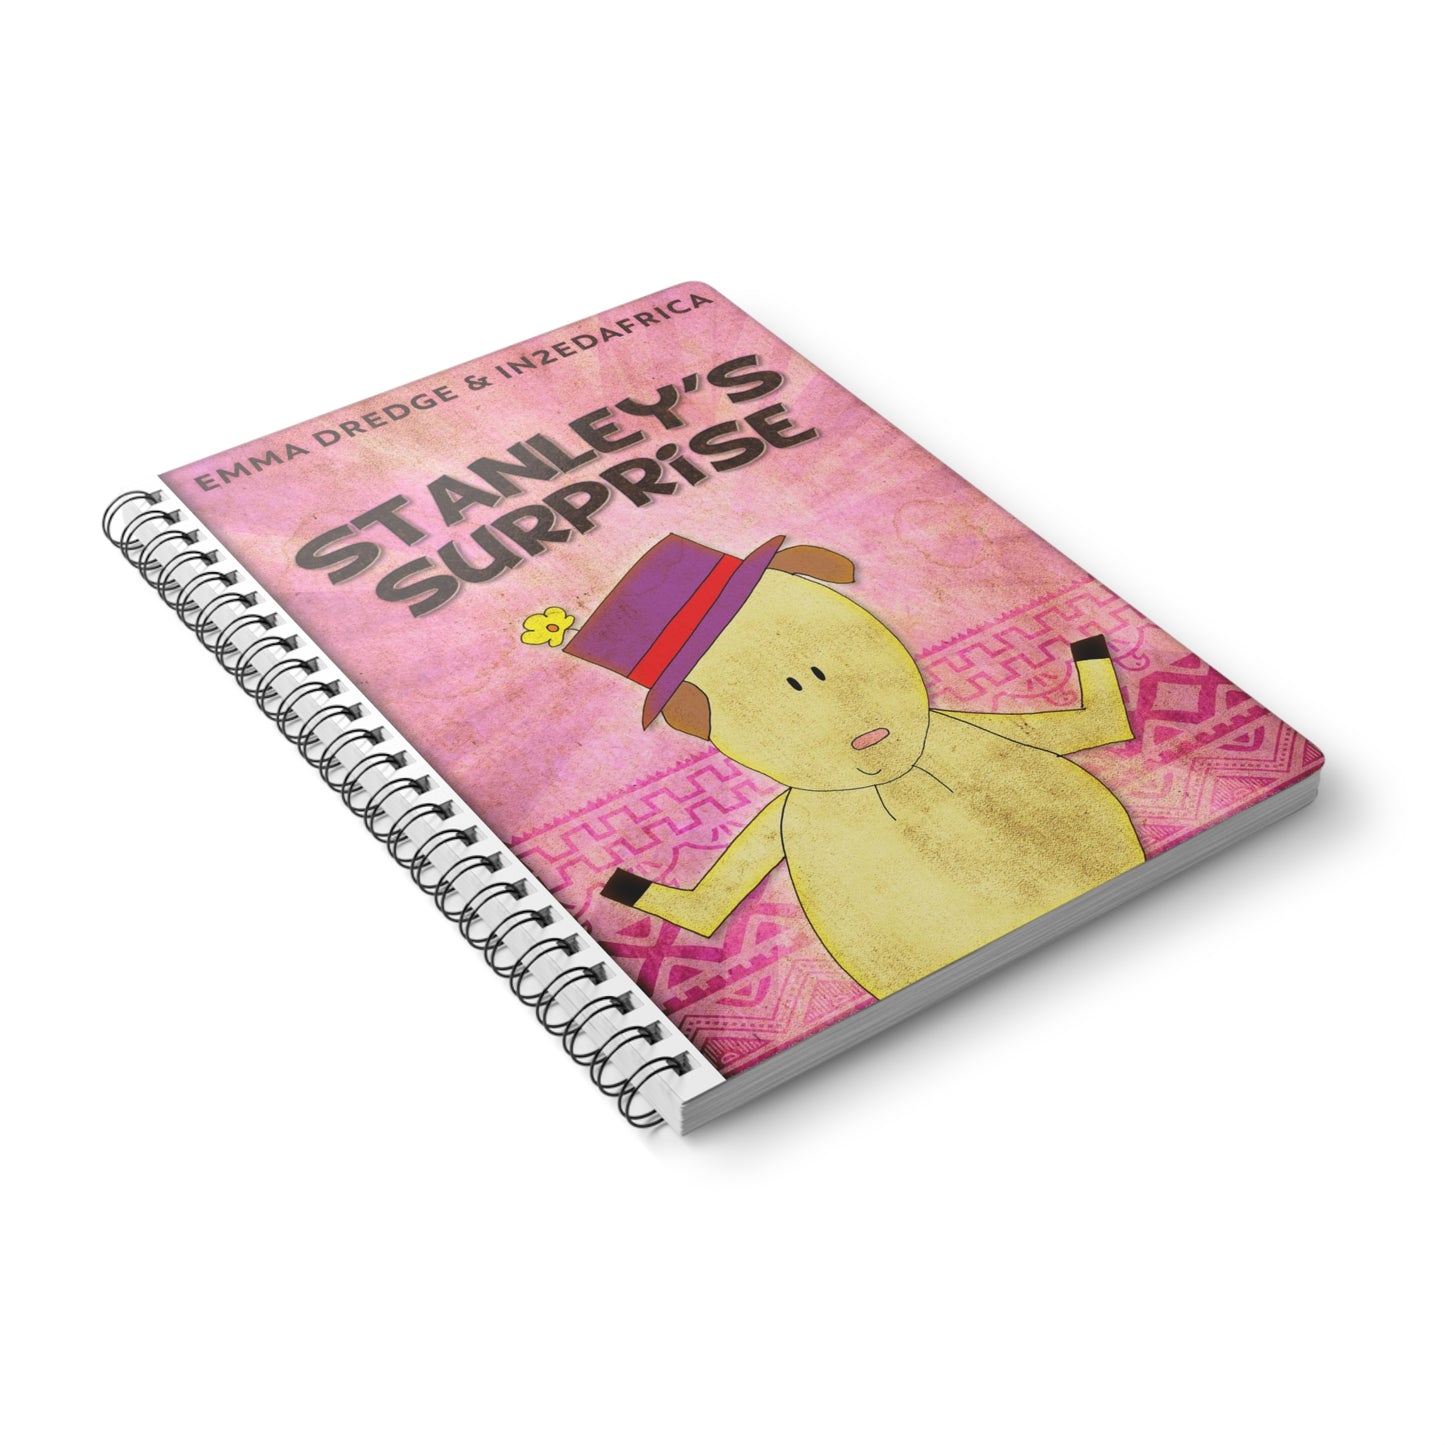 Stanley’s Surprise - A5 Wirebound Notebook